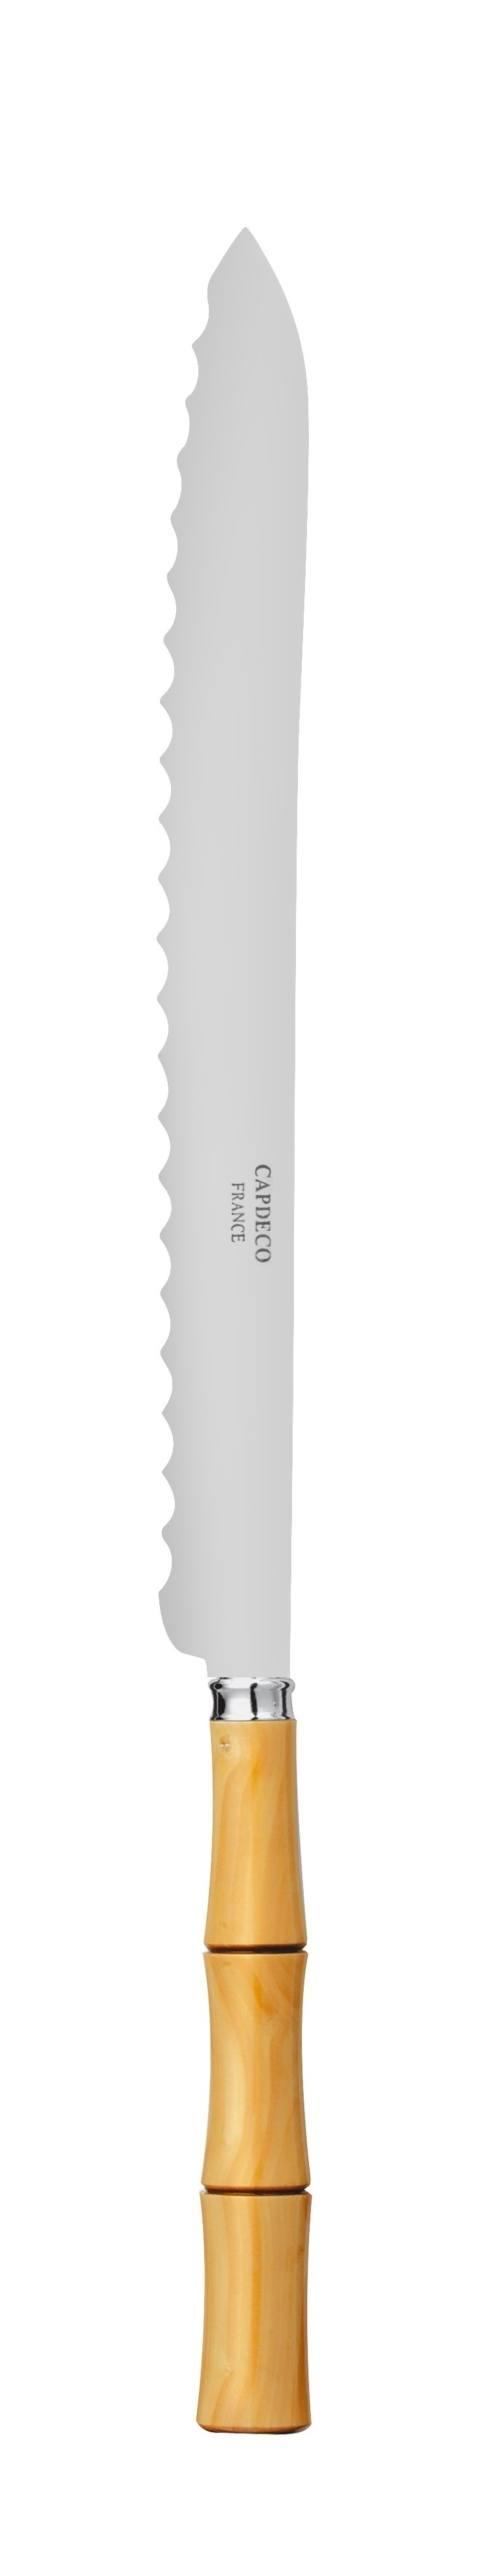 Bread knife - $102.00